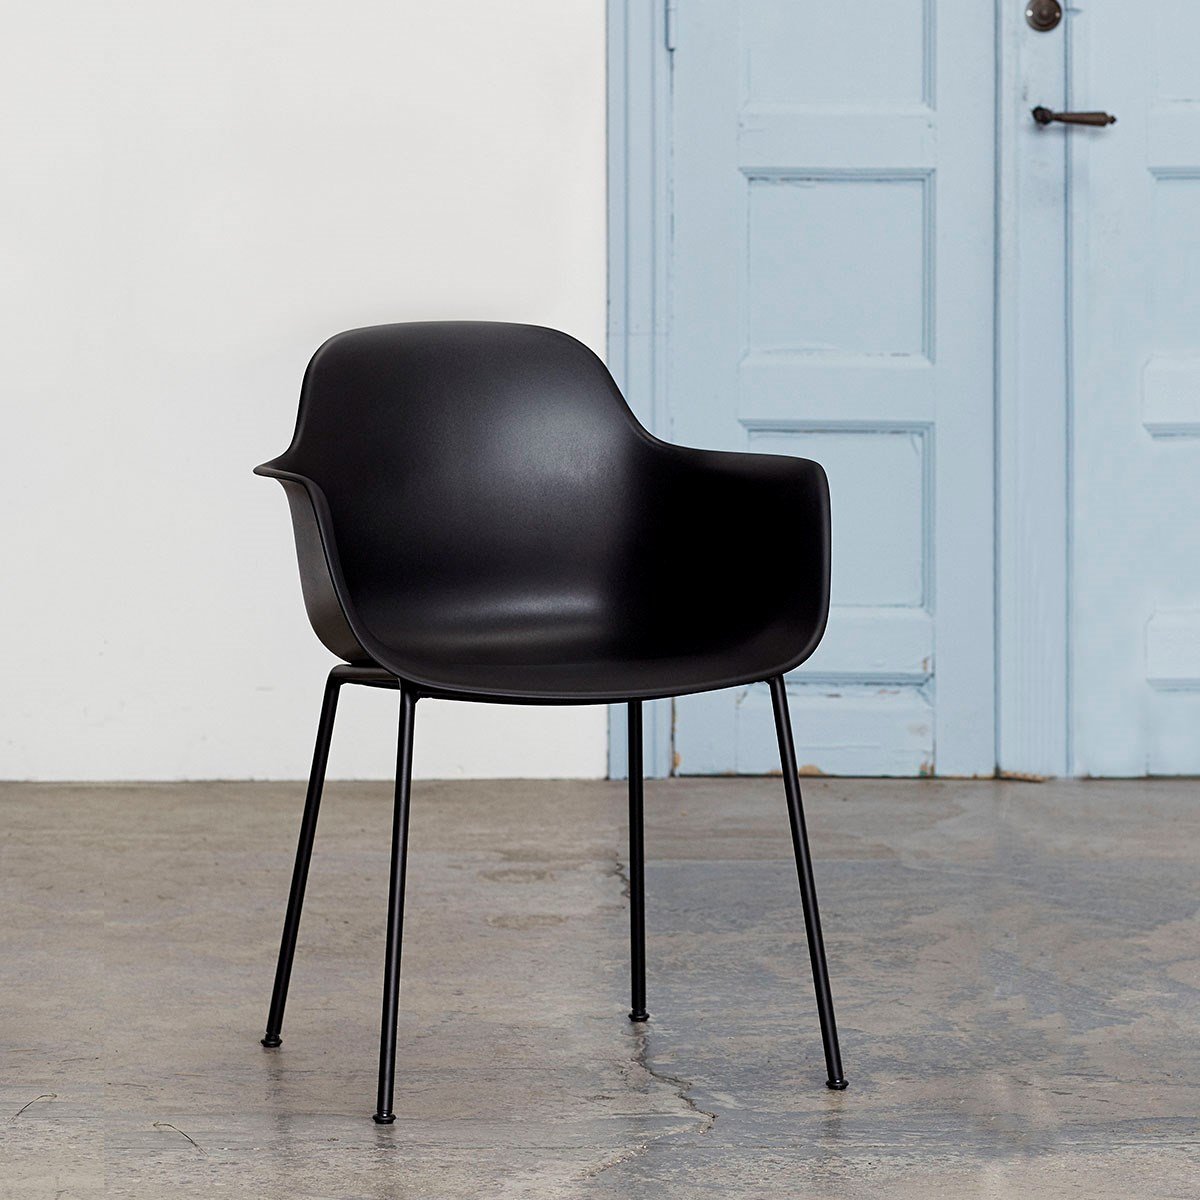 Andersern Furniture Ac3 Chair Black Frame, Black Seat